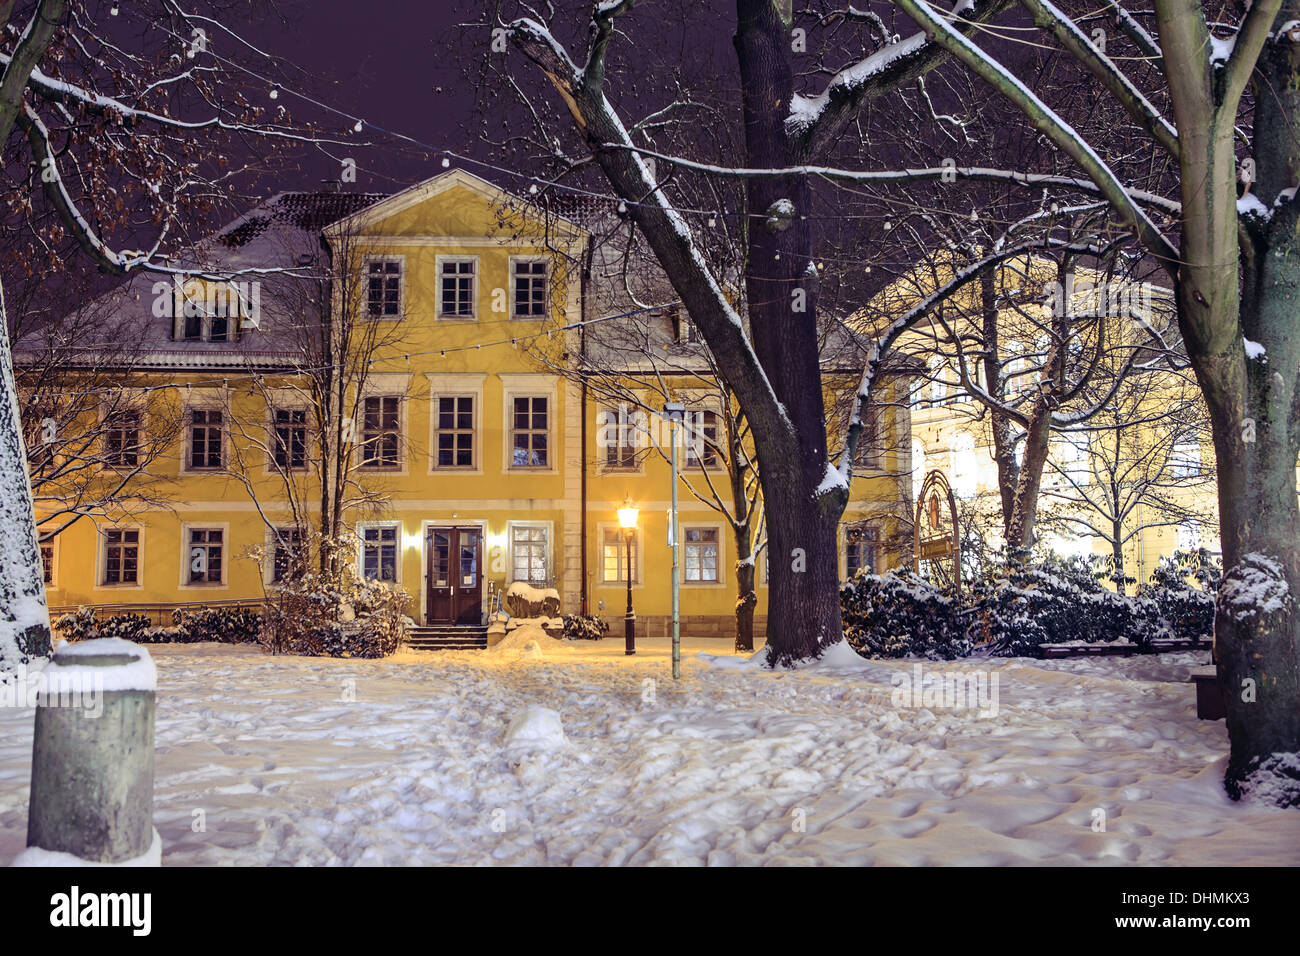 Nachtszenen winterliche Coburg in Bayern, Deutschland Stockfoto